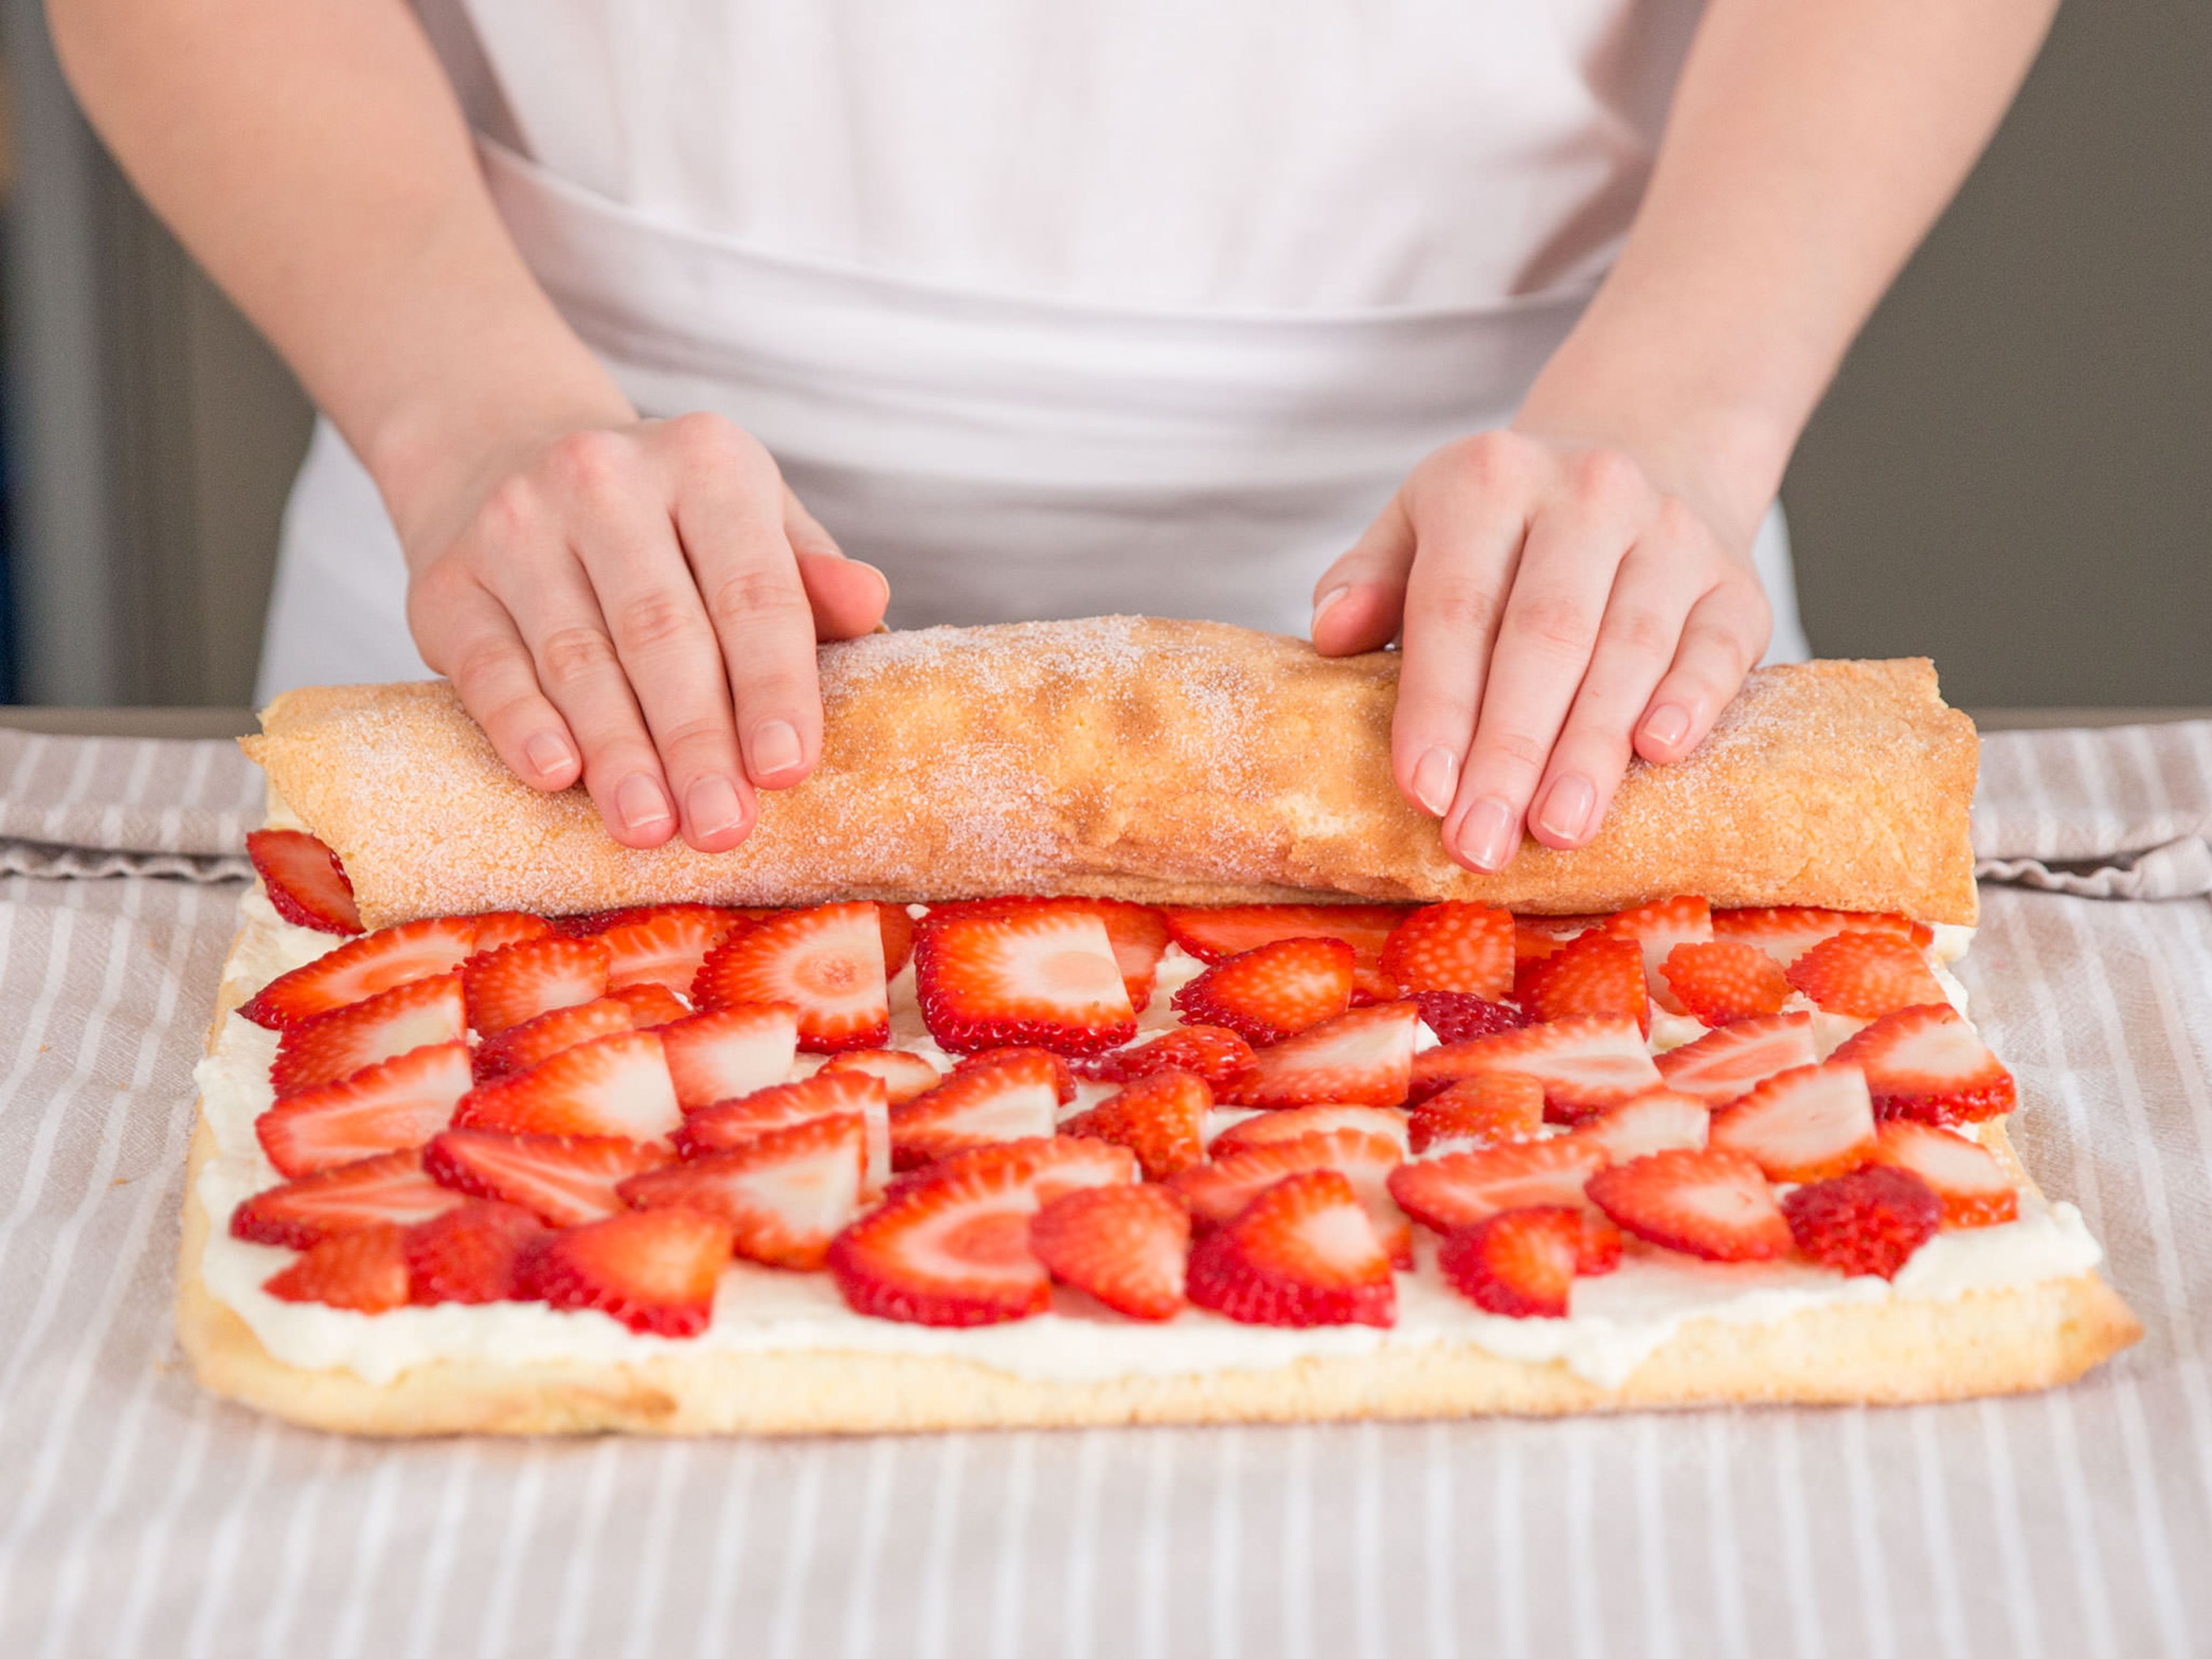 Sicherstellen, dass der Kuchen komplett abgekühlt ist. Ca. zweidrittel der Sahnefüllung auf dem Kuchen verteilen, gefolgt von einer gleichmäßigen Schicht Erdbeeren. Anschließend mit Hilfe des Handtuchs nach vorne zusammenrollen.